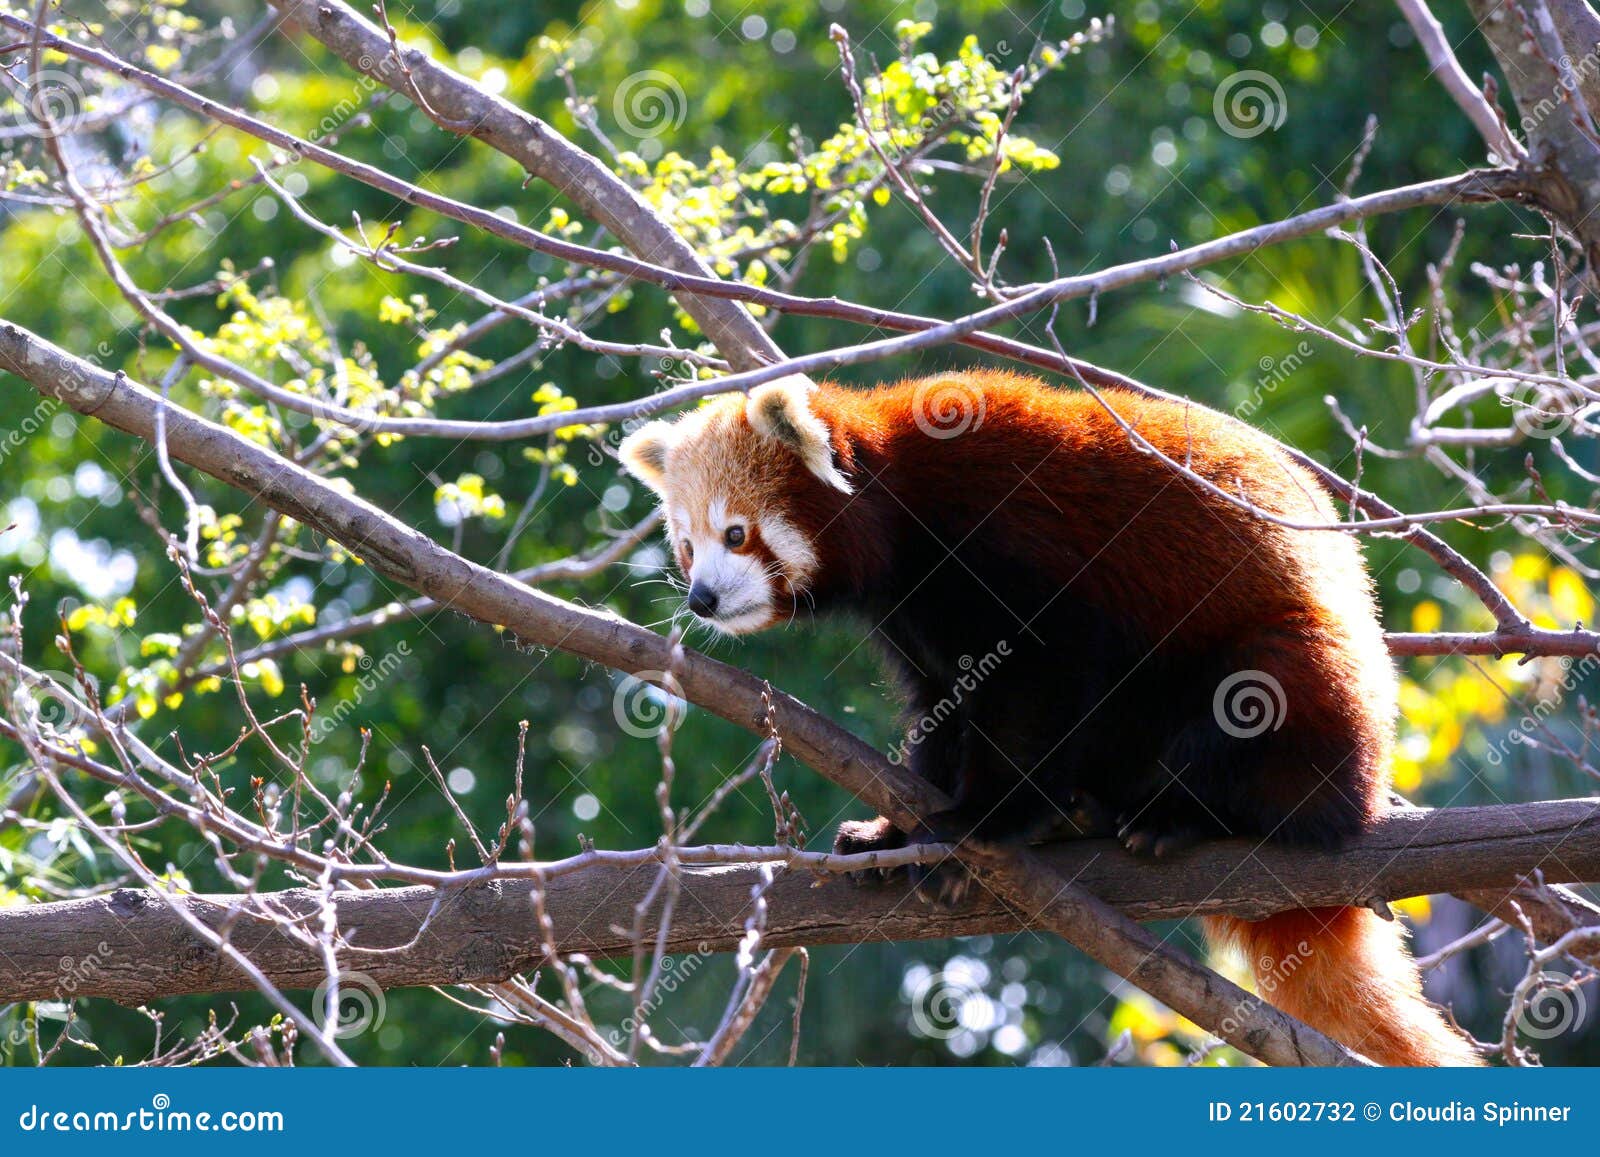 red panda - ailurus fulgens